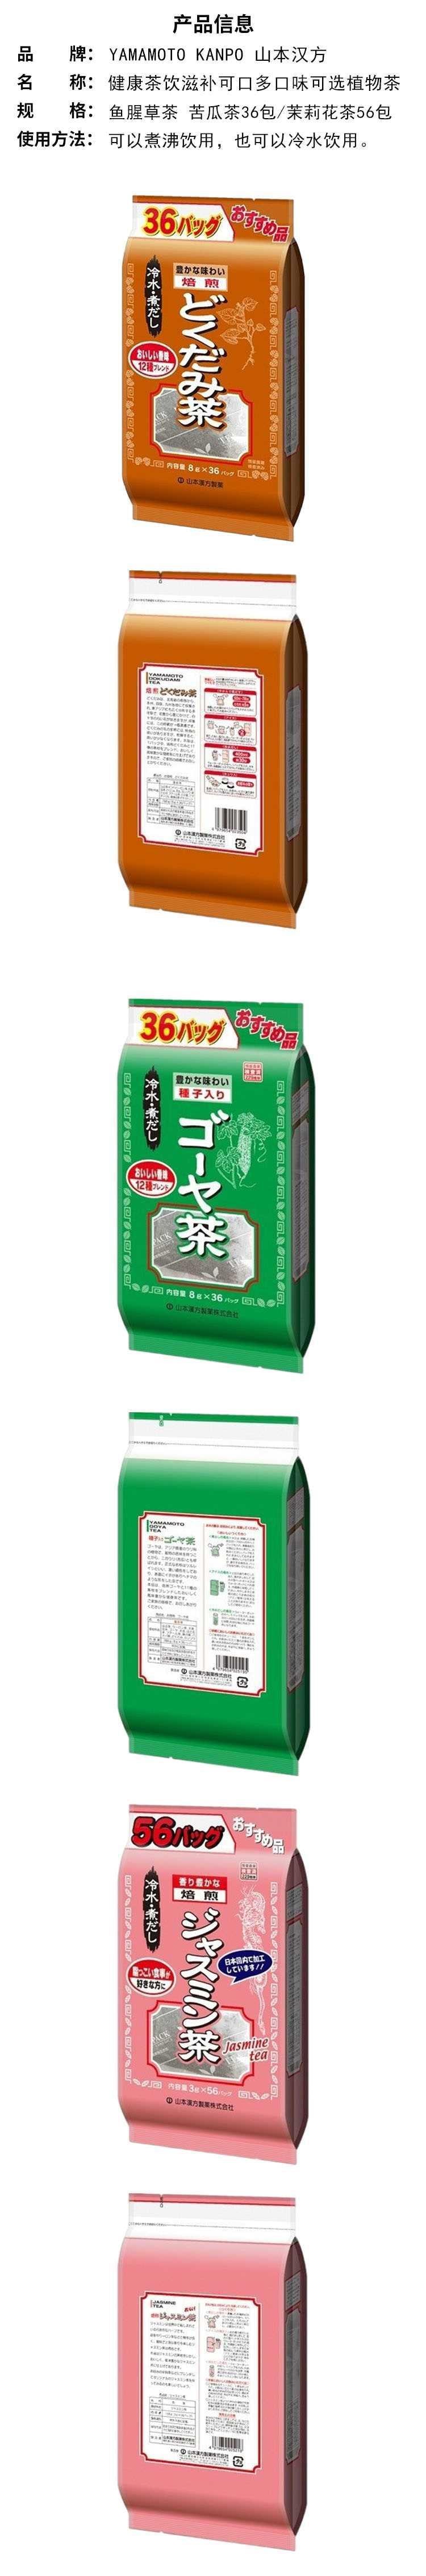 【日本直邮】YAMAMOTO山本汉方制药 超值茉莉花茶 3g*56包